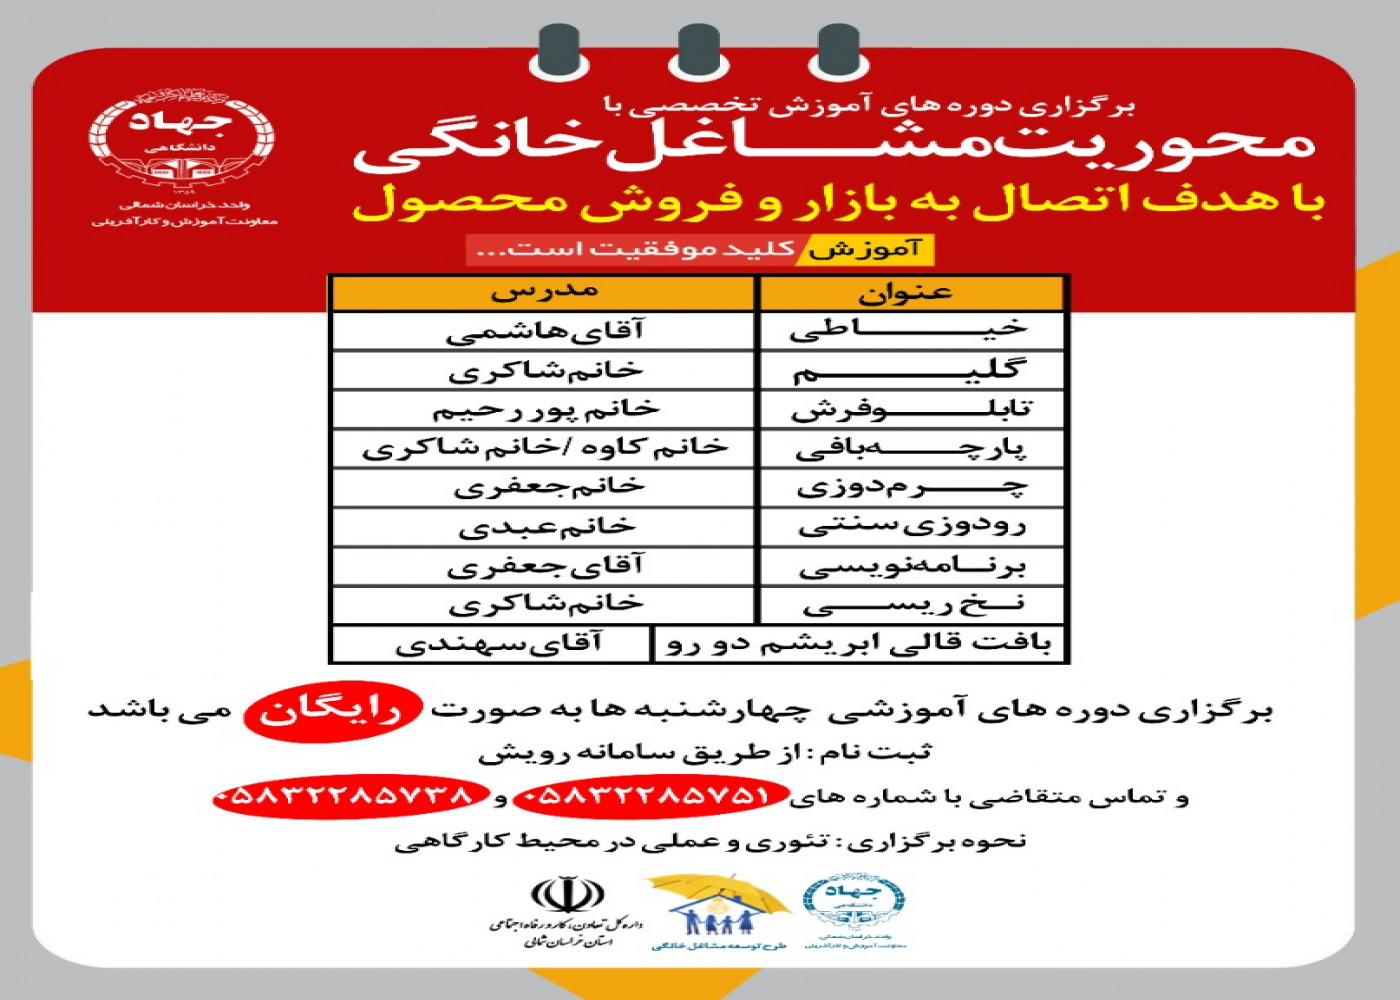 برگزاری دوره های آموزشی تخصصی با محوریت مشاغل خانگی در خراسان شمالی